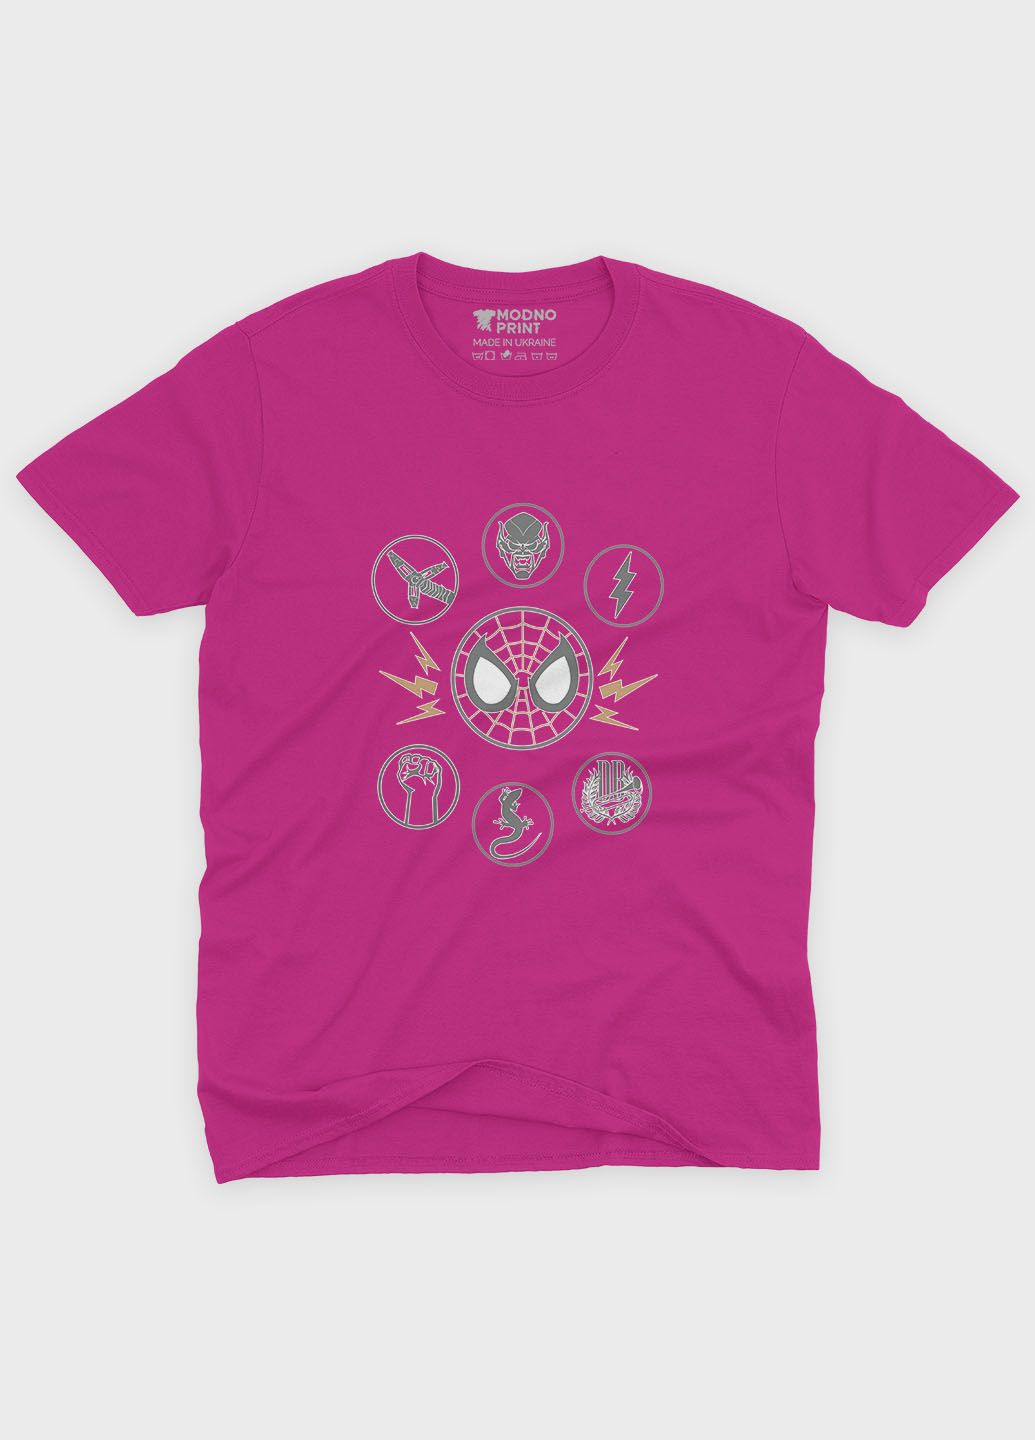 Розовая демисезонная футболка для девочки с принтом супергероя - человек-паук (ts001-1-fuxj-006-014-012-g) Modno